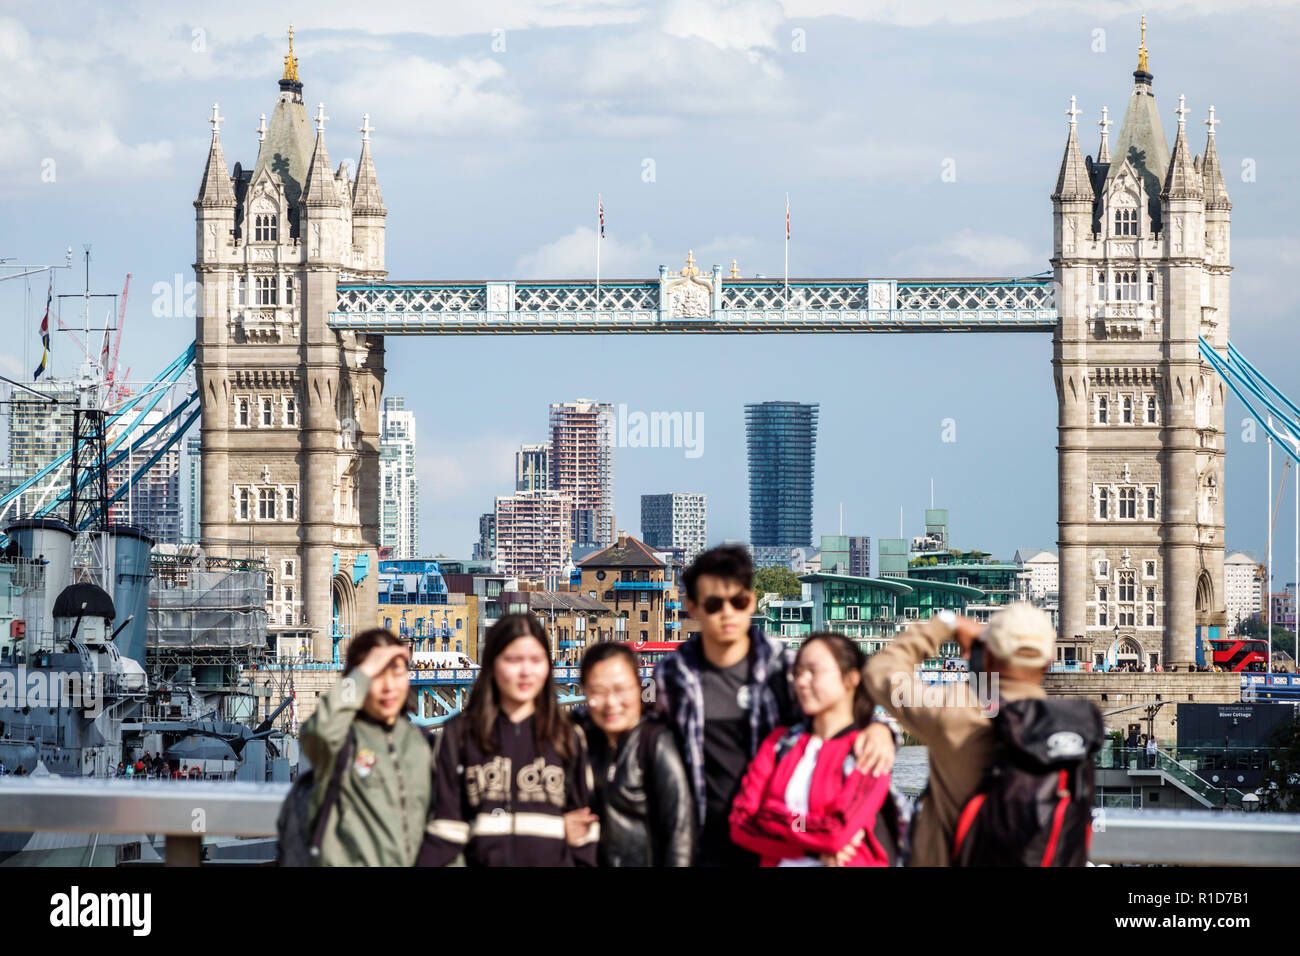 Londra Inghilterra,Regno Unito,Tower Bridge,Tamigi River,punto di riferimento,architettura in stile gotico vittoriano,skyline della città,famiglie asiatiche genitori bambini Foto Stock